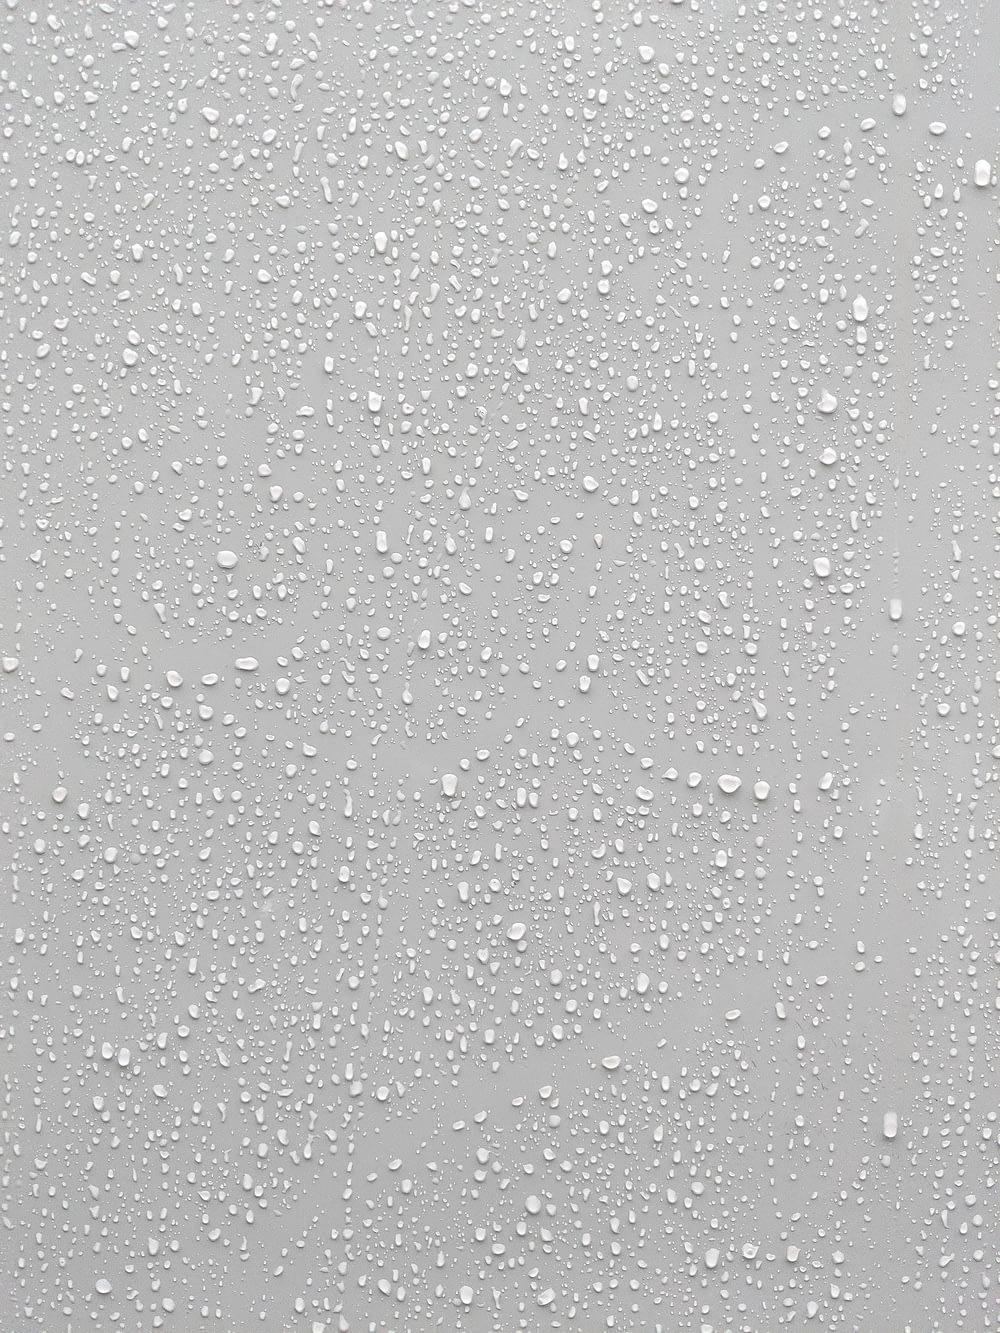 Wassertropfen auf eine Glasoberfläche mit weißem Hintergrund